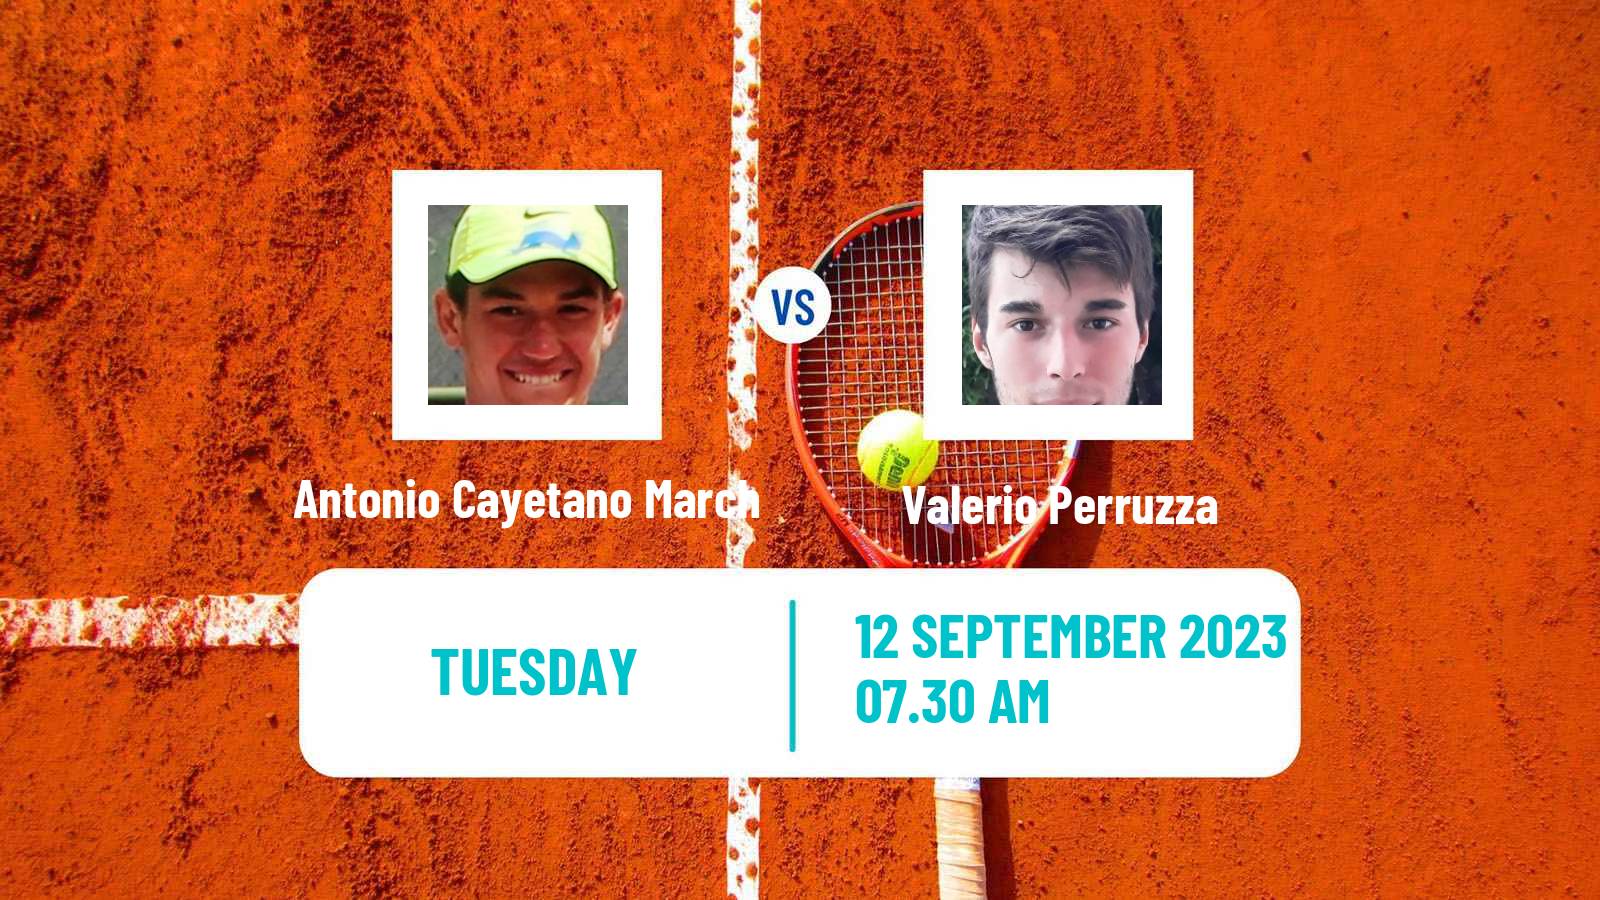 Tennis ITF M15 Satu Mare Men 2023 Antonio Cayetano March - Valerio Perruzza